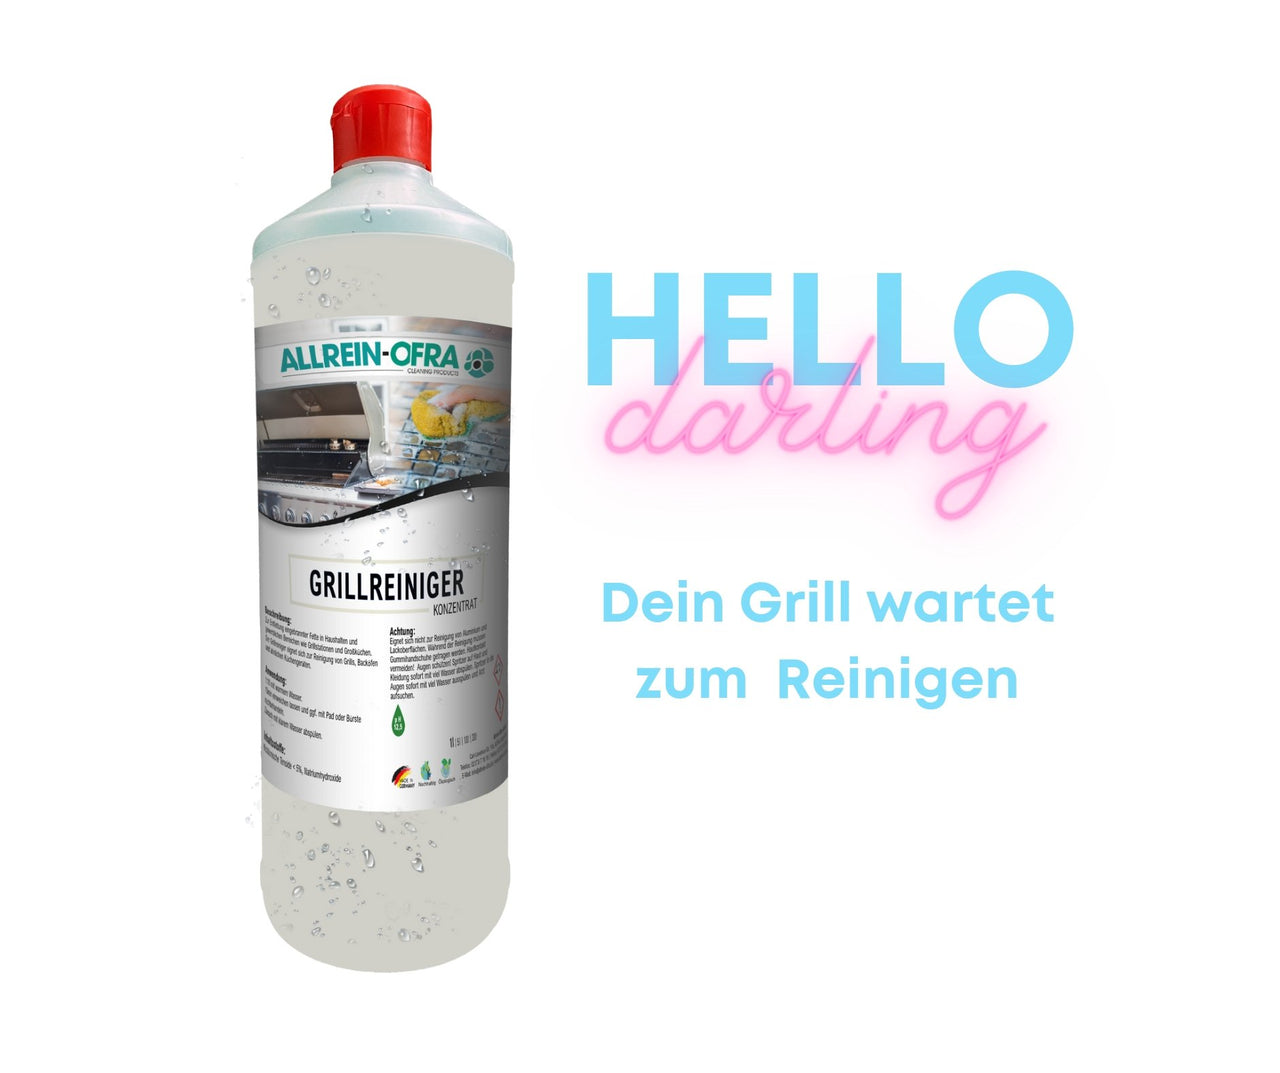 Grillreiniger, hello Darling! - fivestartoolshop.com